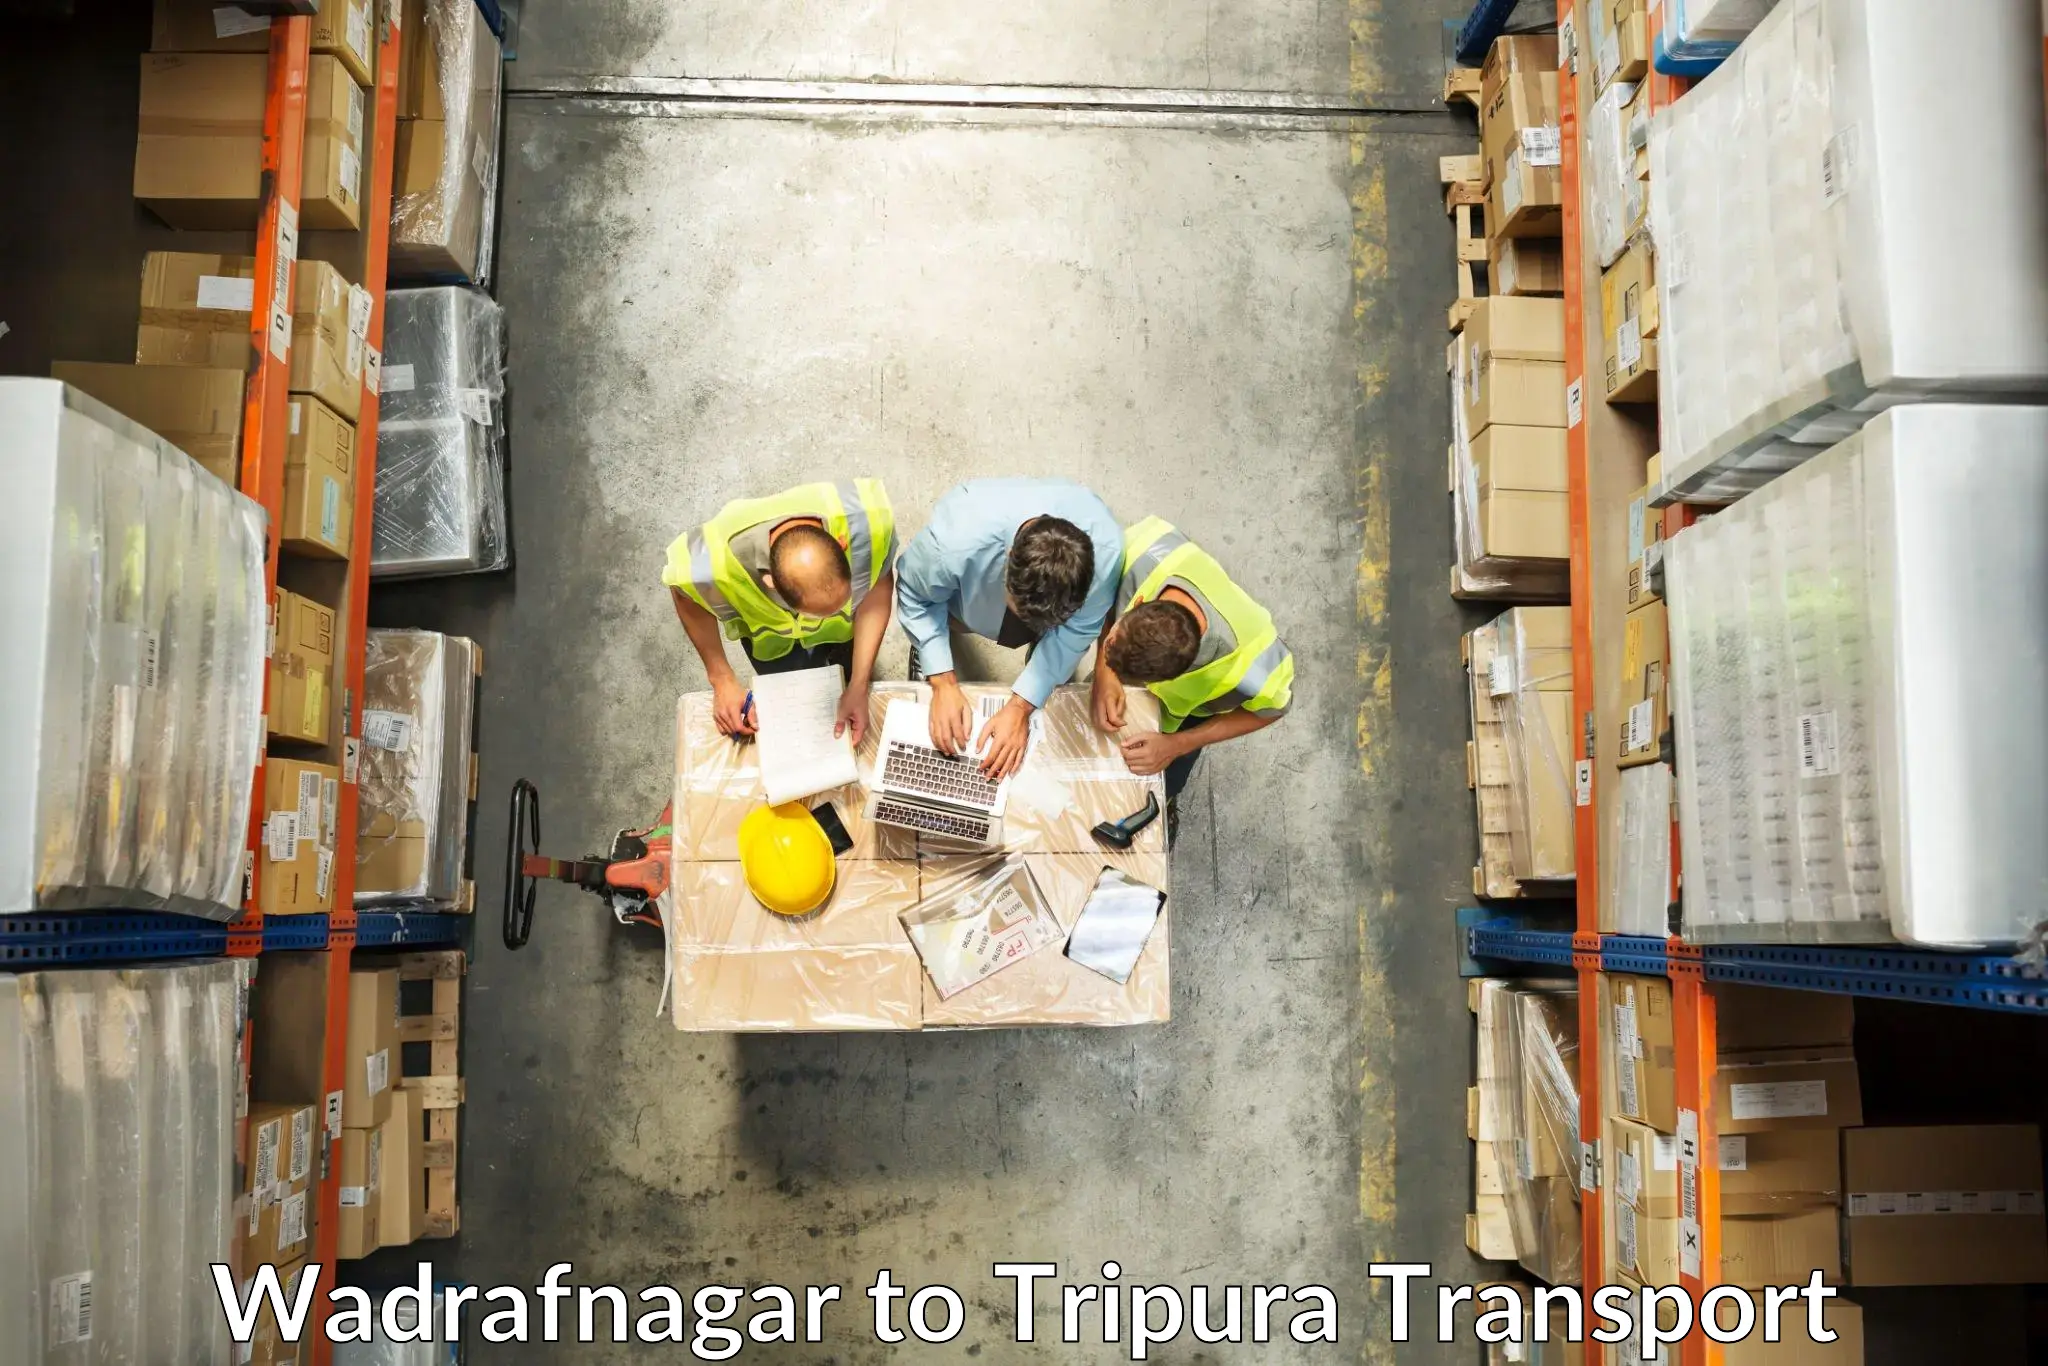 Transportation solution services Wadrafnagar to Agartala